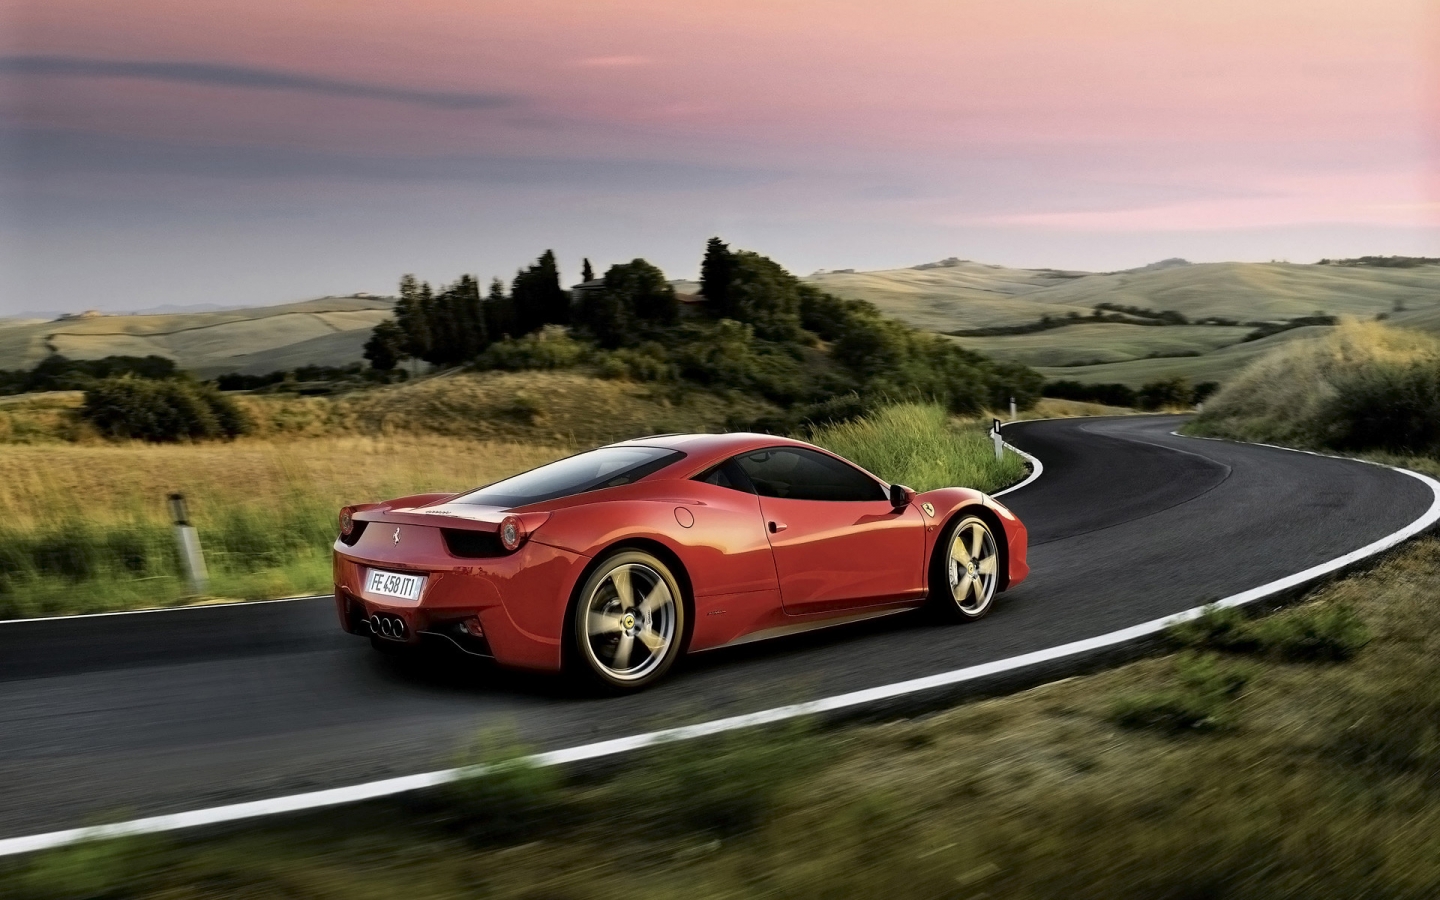 Ferrari 458 Italia Red Rear for 1440 x 900 widescreen resolution